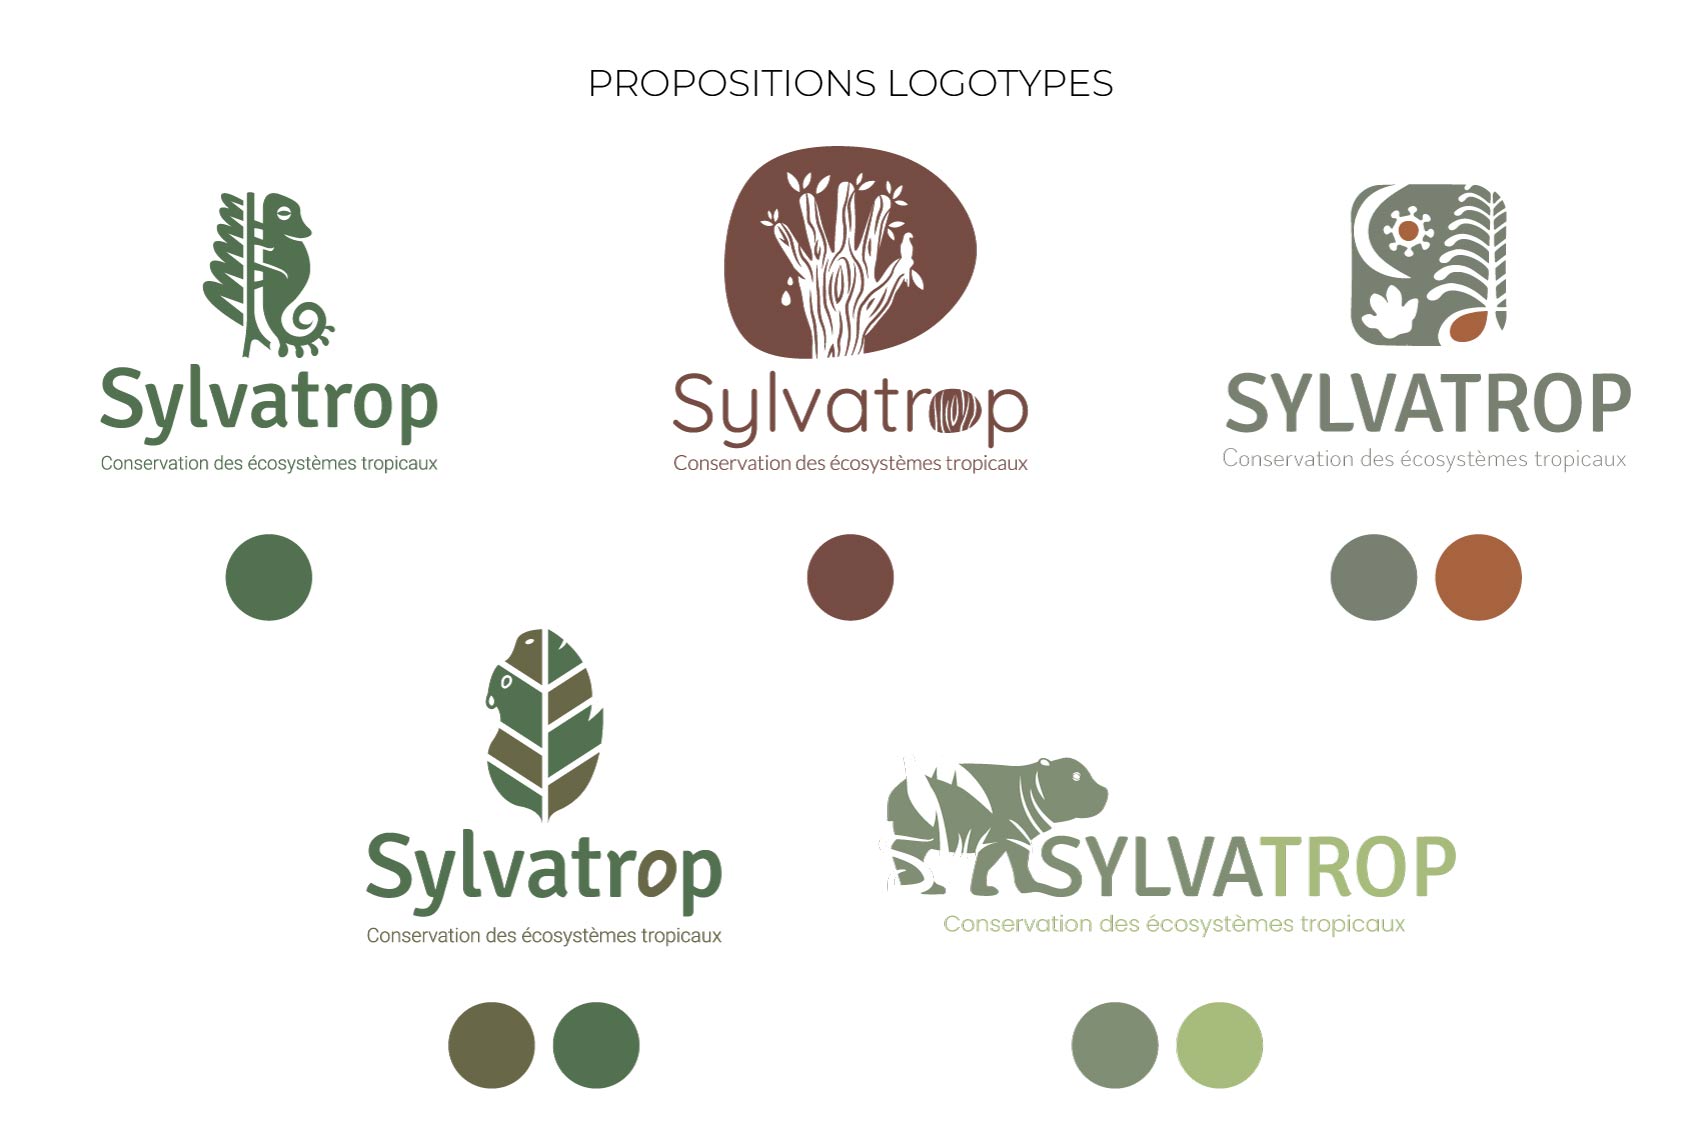 Planche propositions logotypes Sylvatrop